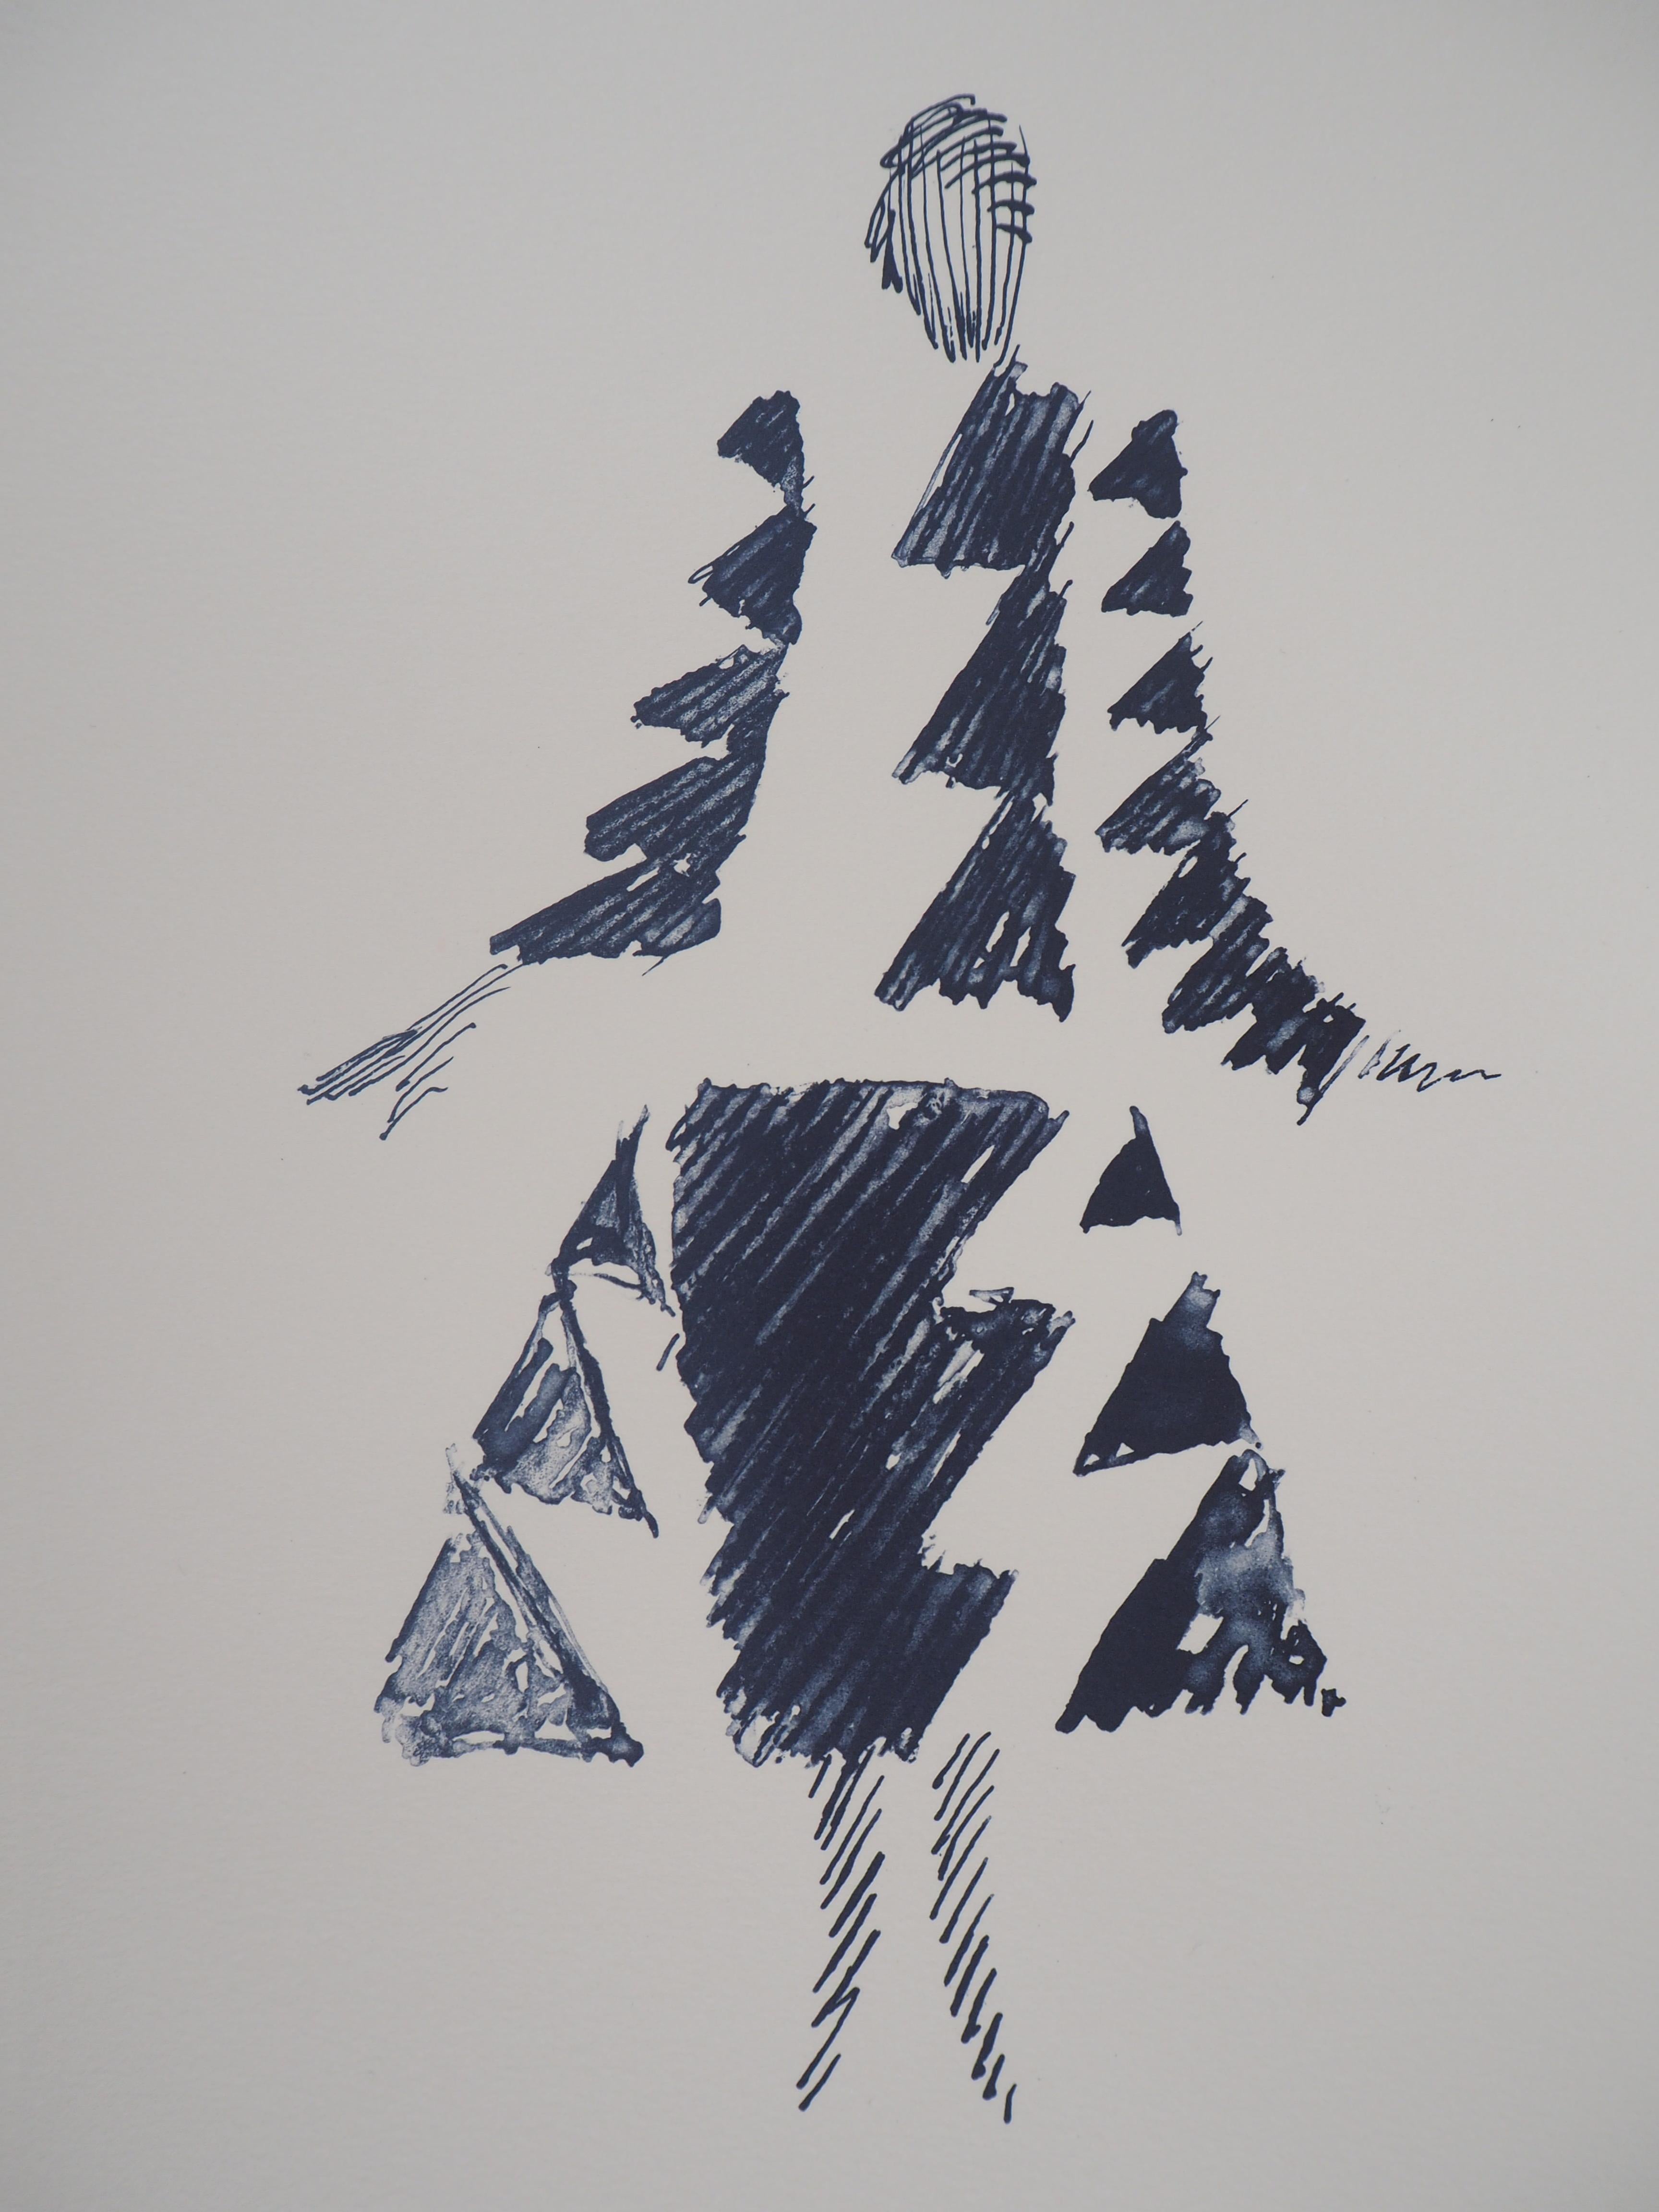 Sonia DELAUNAY
Robe Triangles Rythmes

Lithographie d'après une peinture de 1926
Signature imprimée dans la plaque
Numéroté /600 
Sur papier vélin 40 x 30 cm (c. 15.7 x 11.8 in)
Edition ArtCurial 

Excellent état